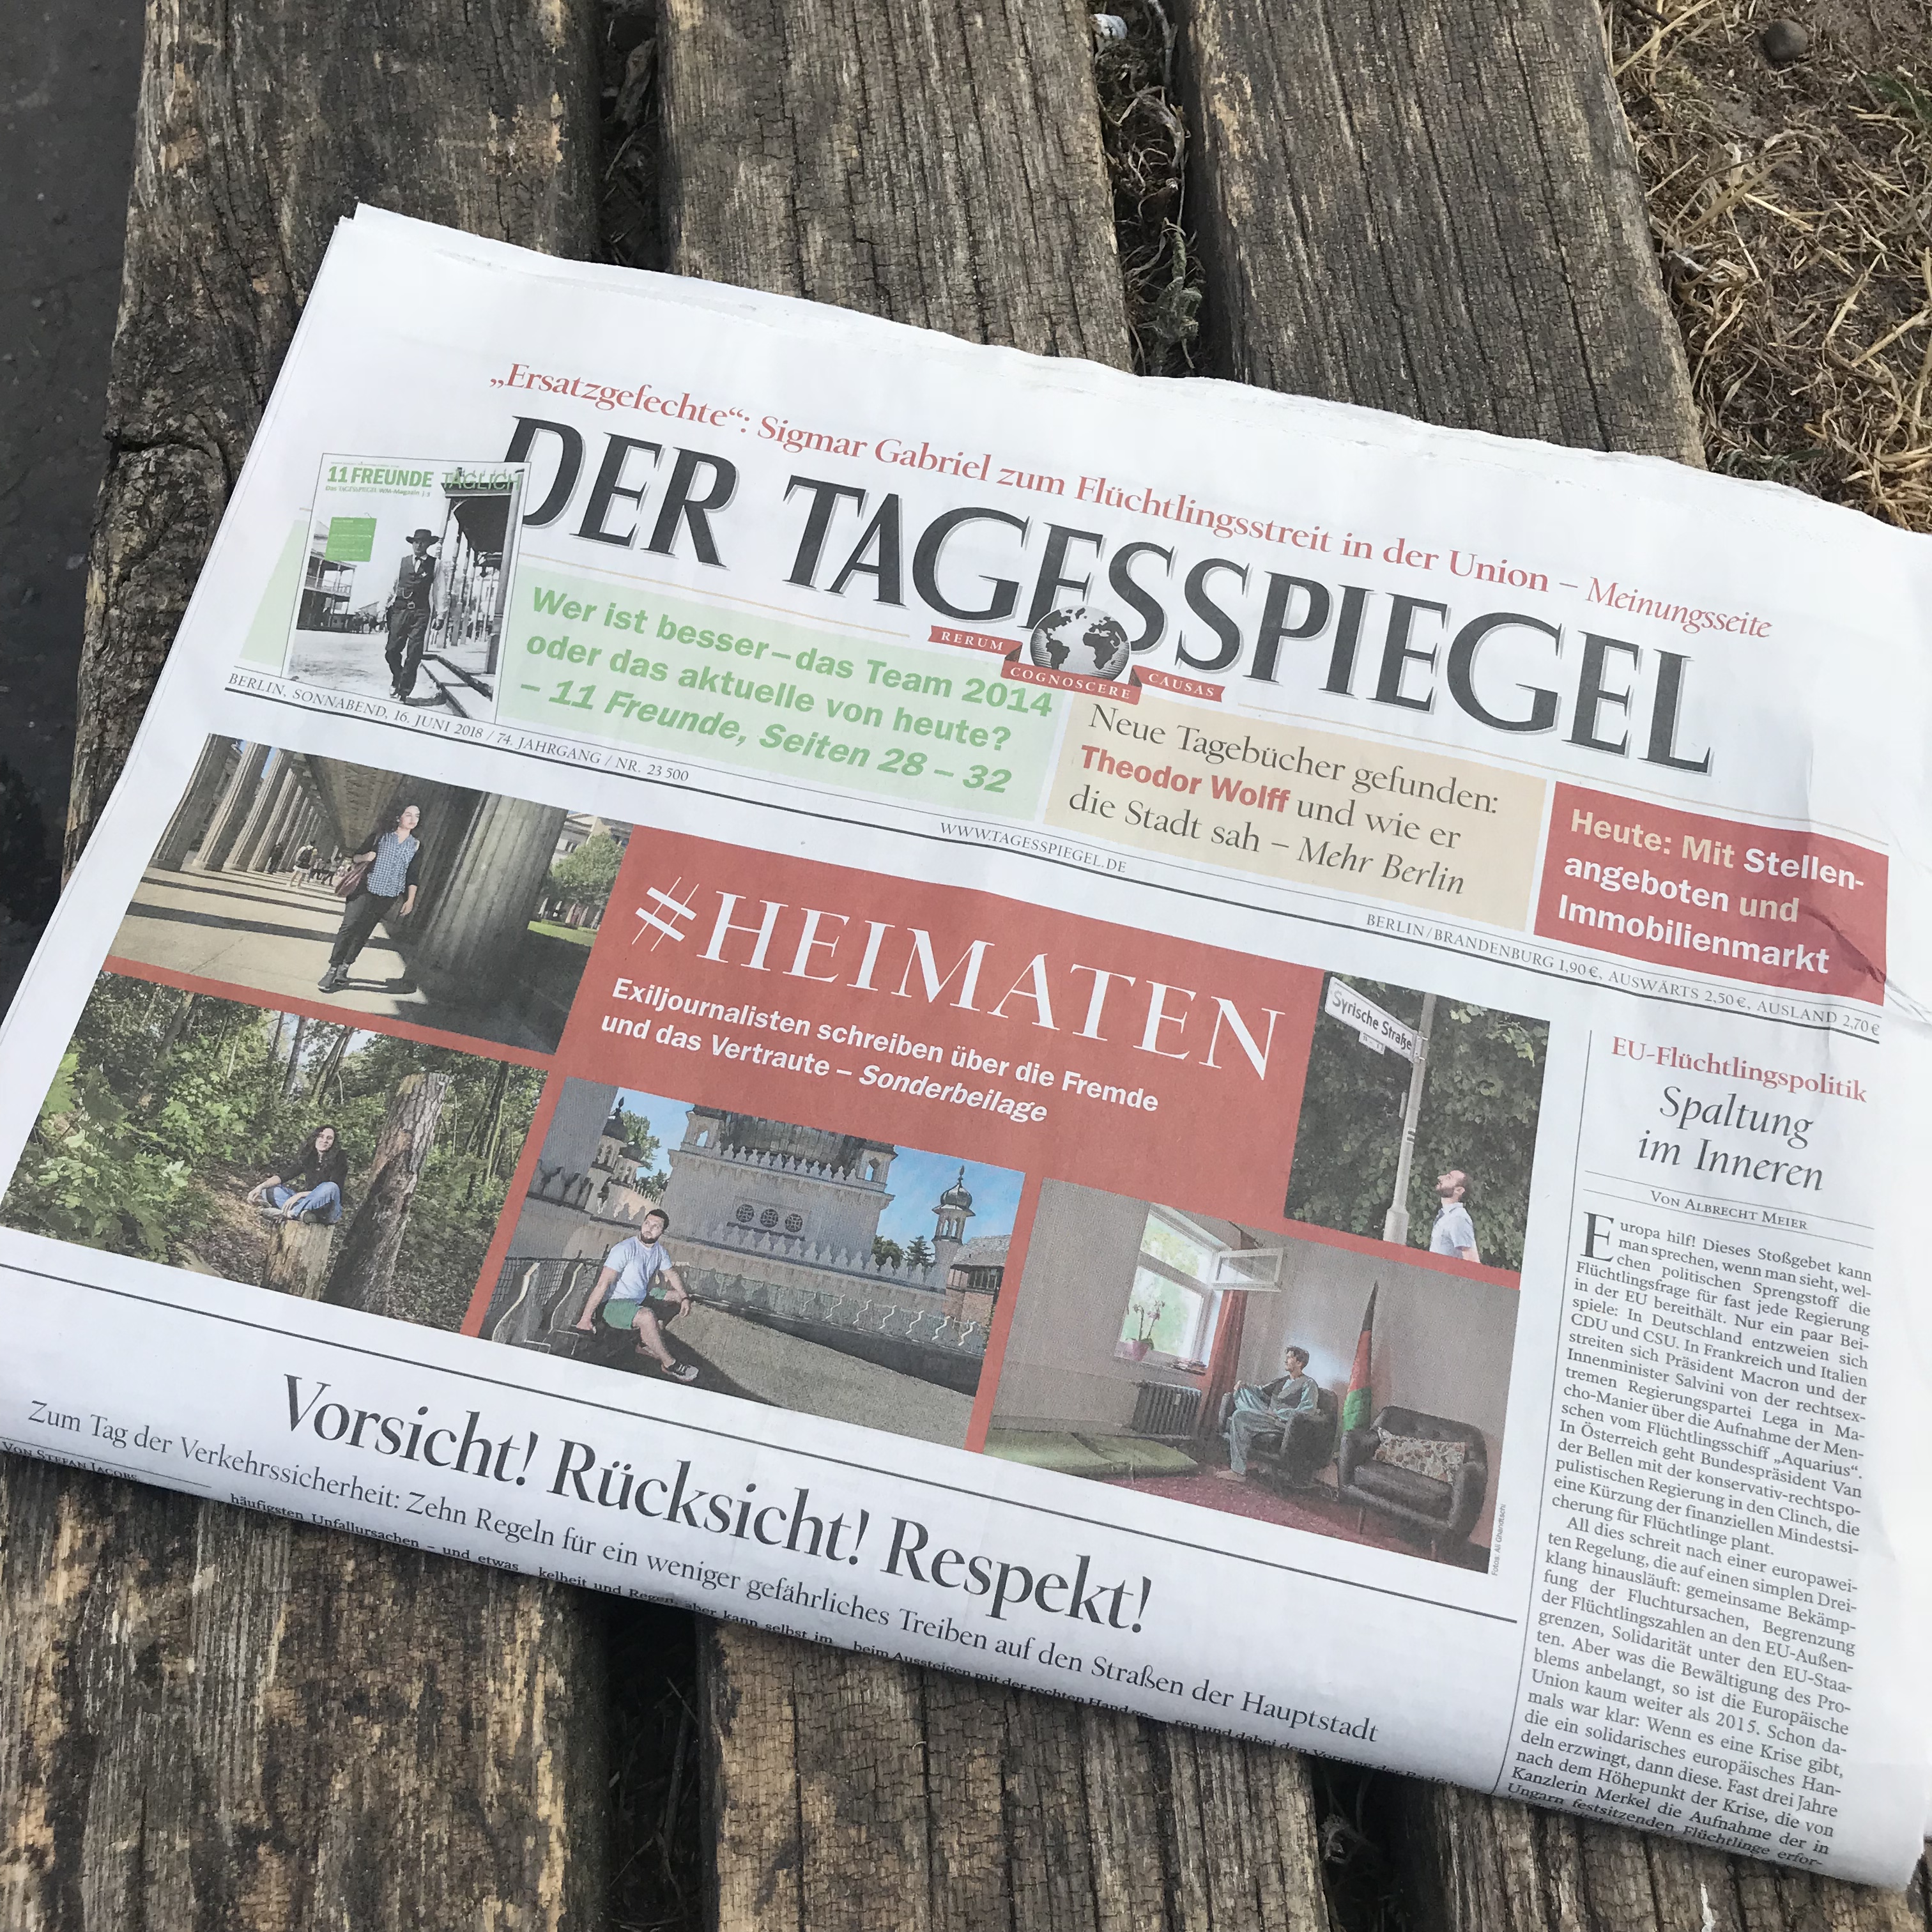  Eine Tagesspiegel-Beilage in Zusammenarbeit mit der Friedrich-Naumann-Stiftung für die Freiheit und der Robert Bosch Stiftung.